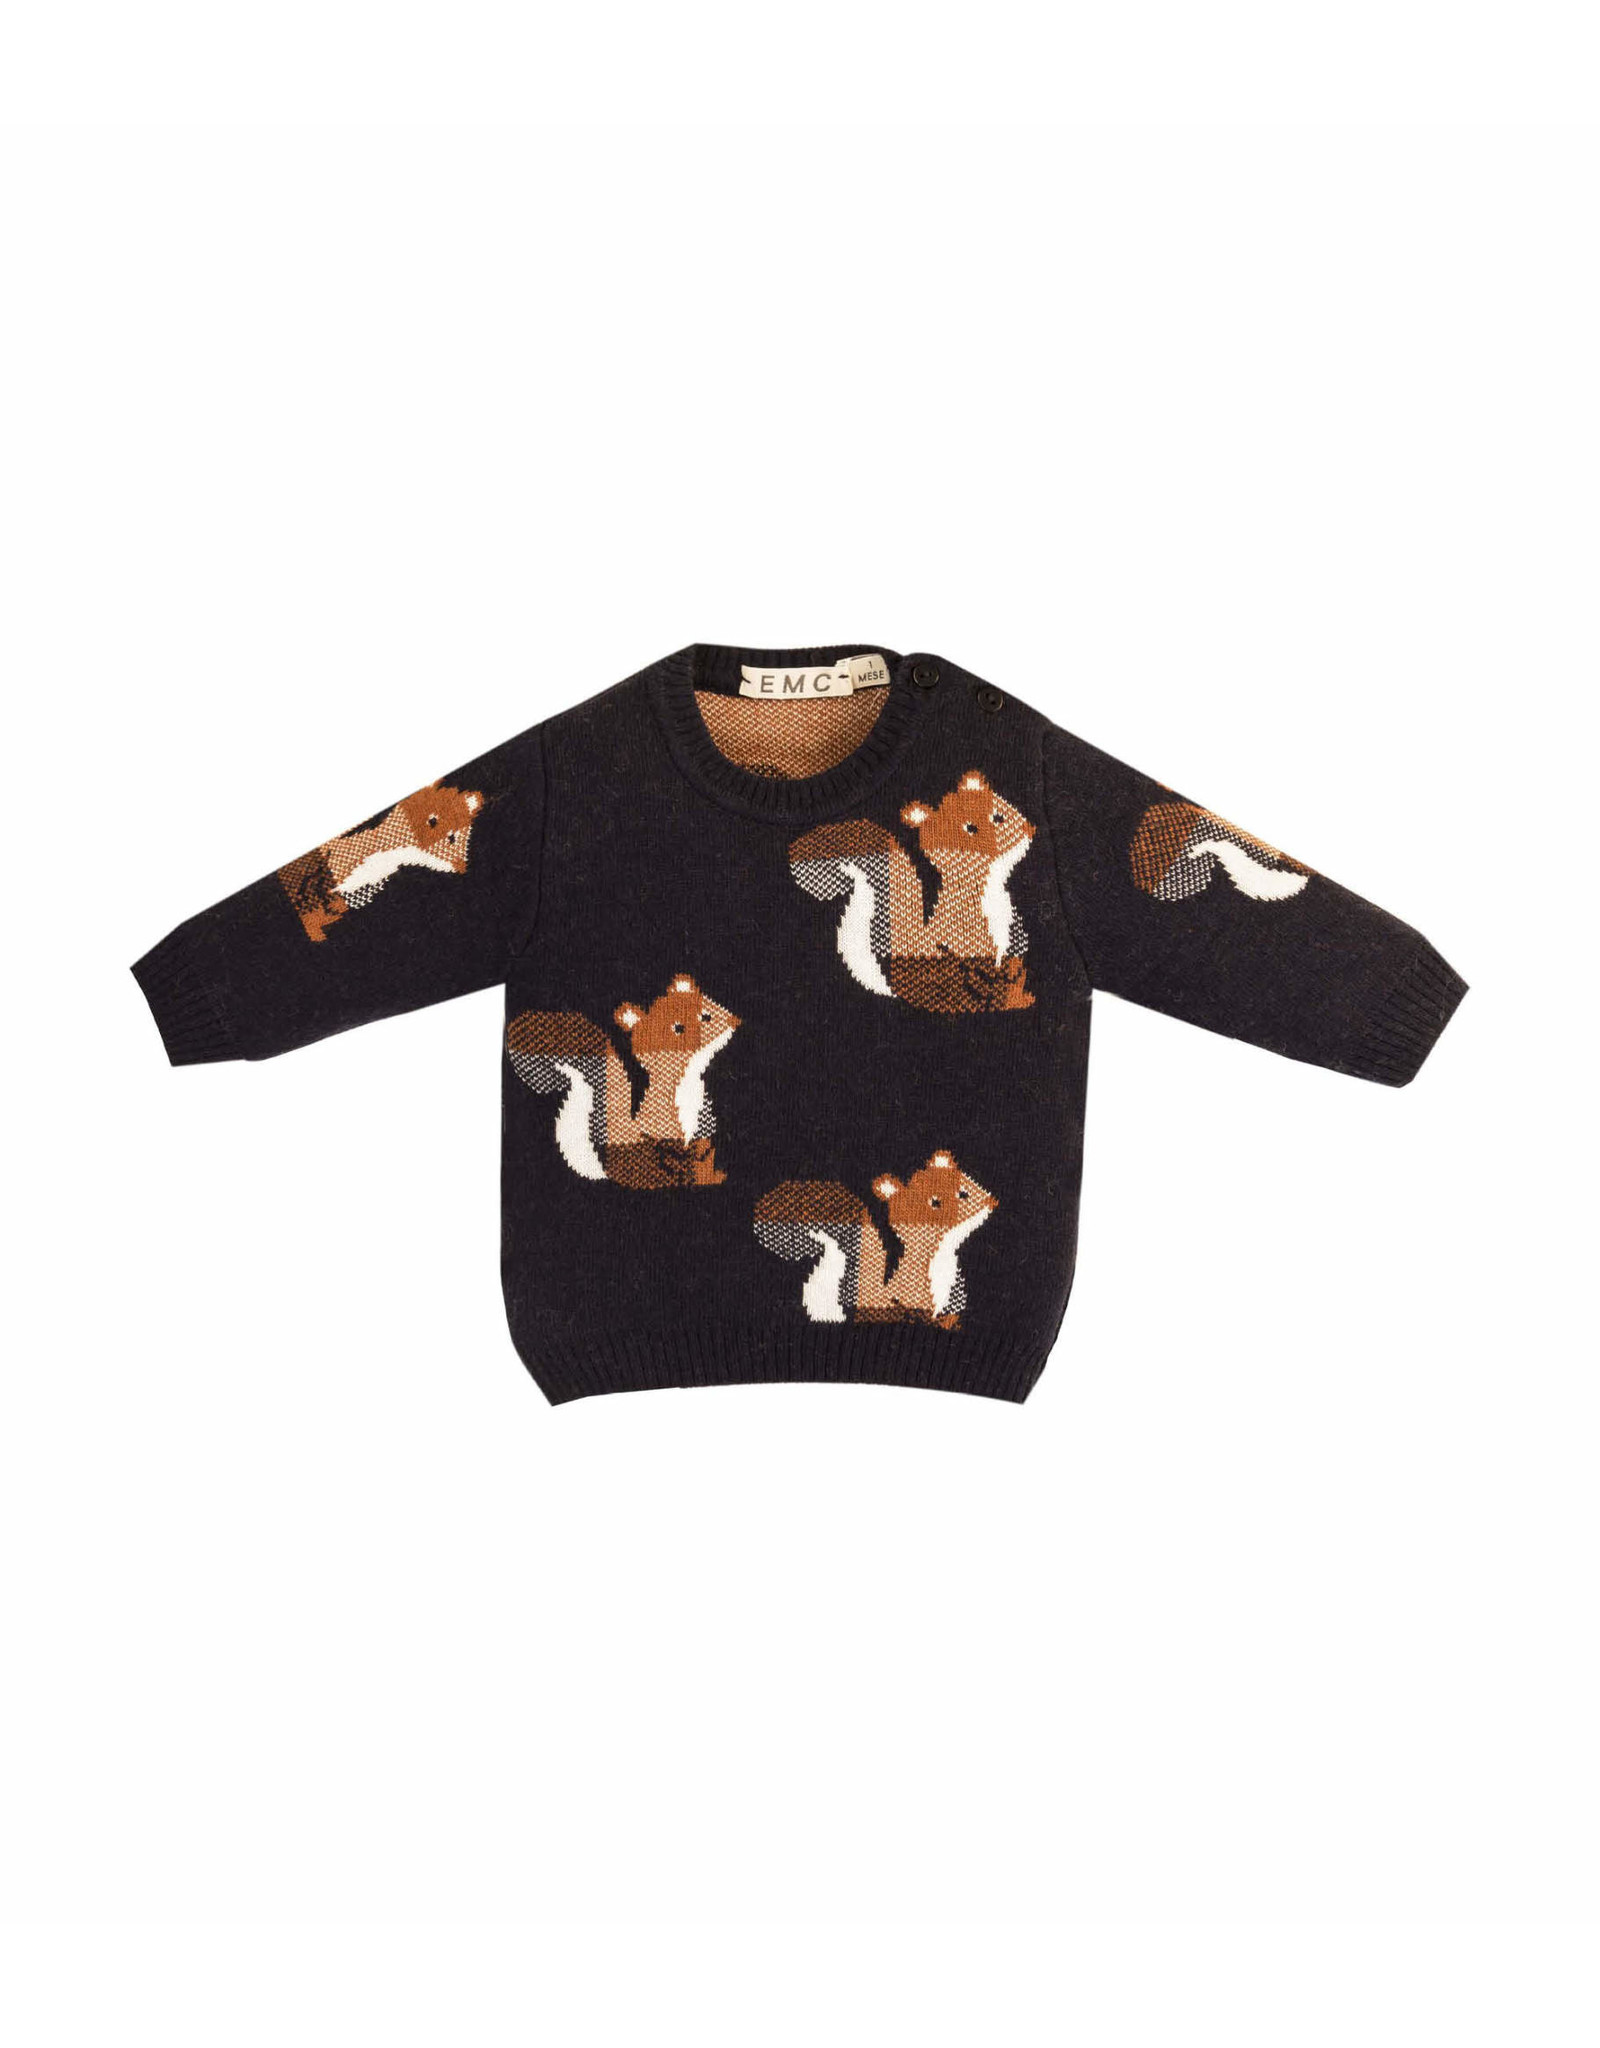 EMC Squirrel Sweater